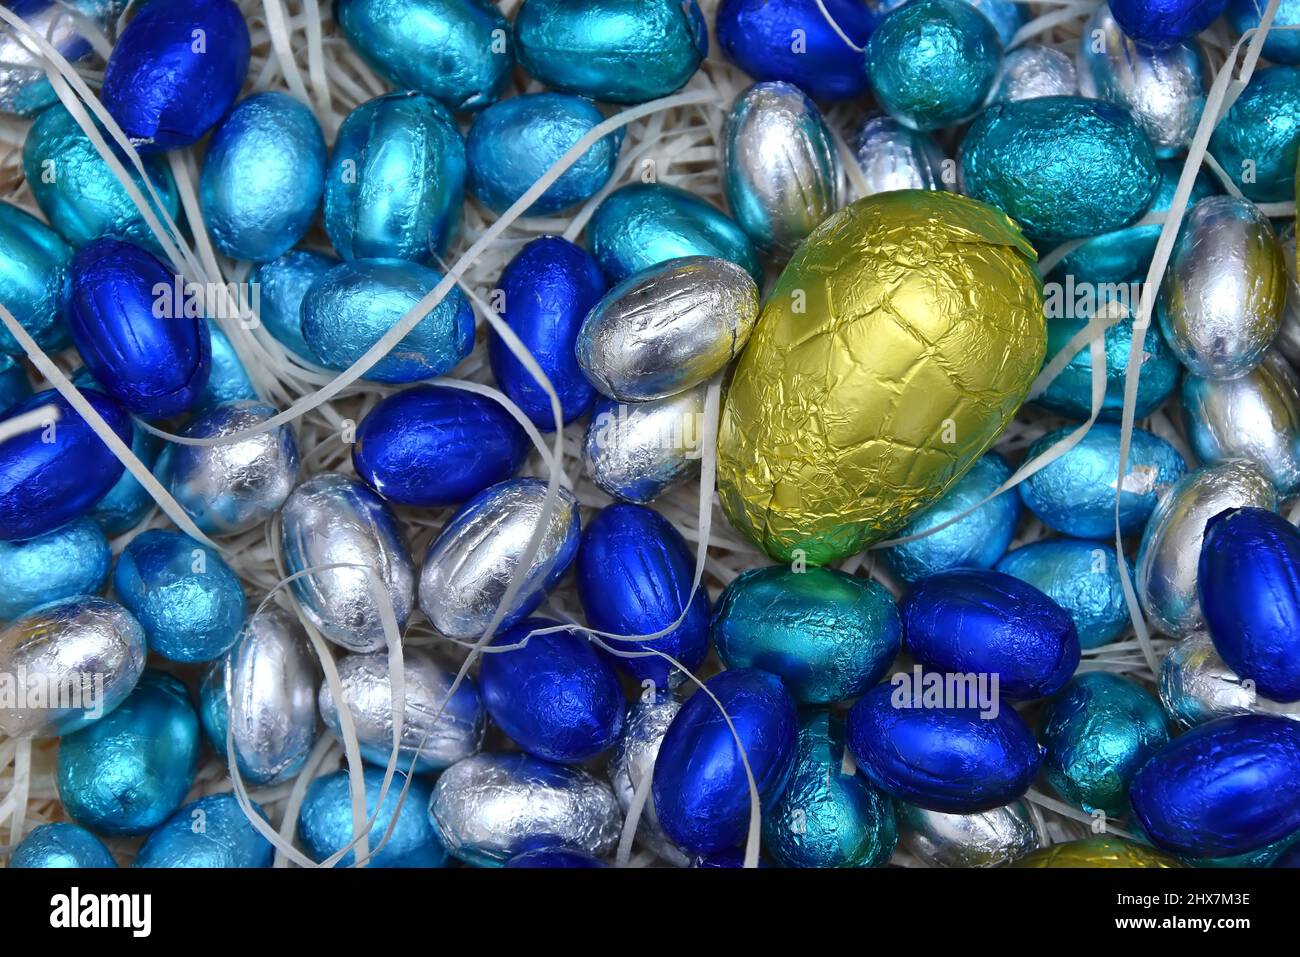 Stapel von bunten Pastellfolie umwickelten Schokoladen-ostereiern in Blau, Silber und Türkis mit einem großen gelben Ei in der Mitte, auf hellem Hintergrund. Stockfoto